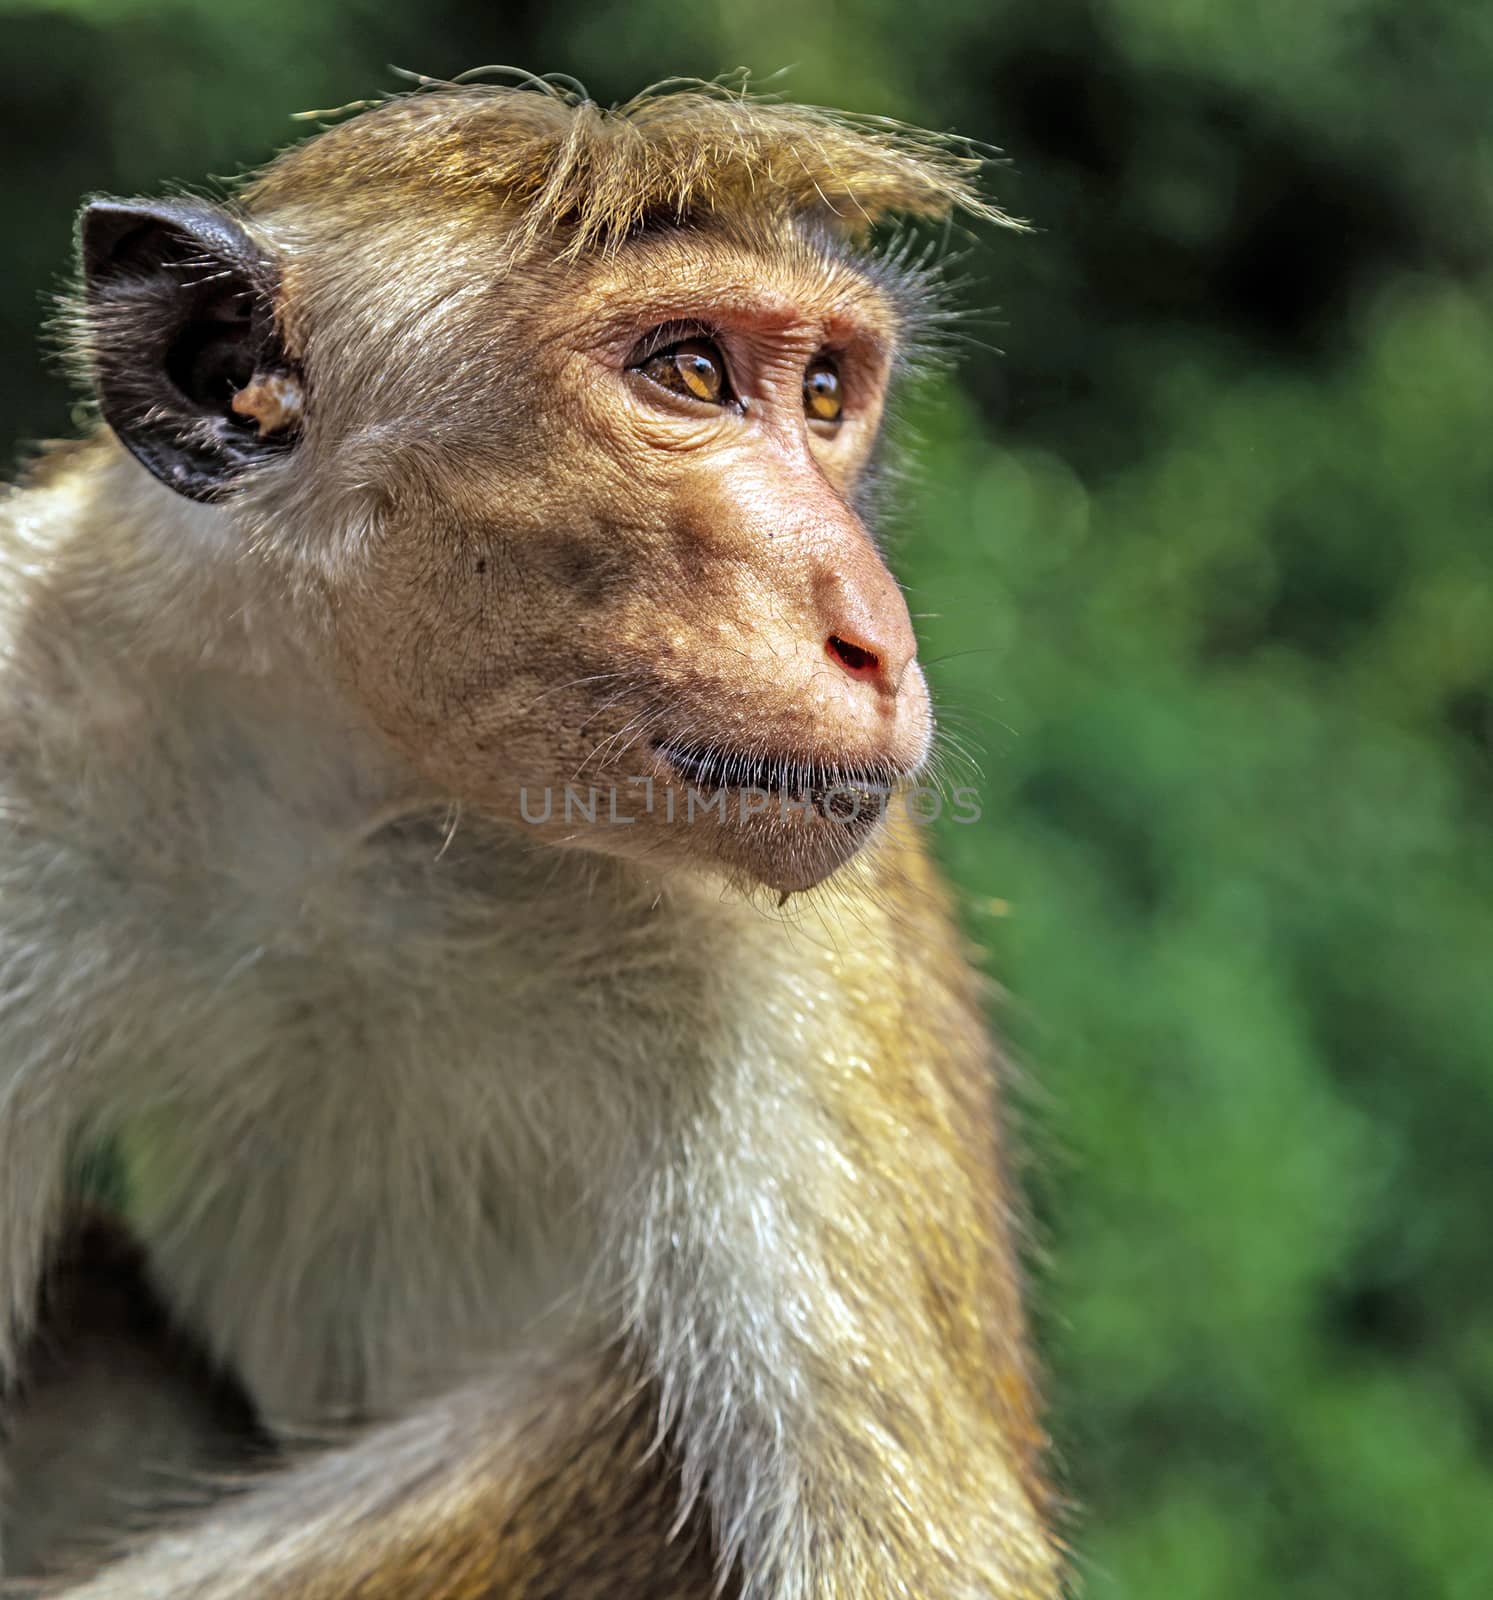 Sri Lankan Monkeys At Yala National Park toque macaque (Macaca s by Vladyslav